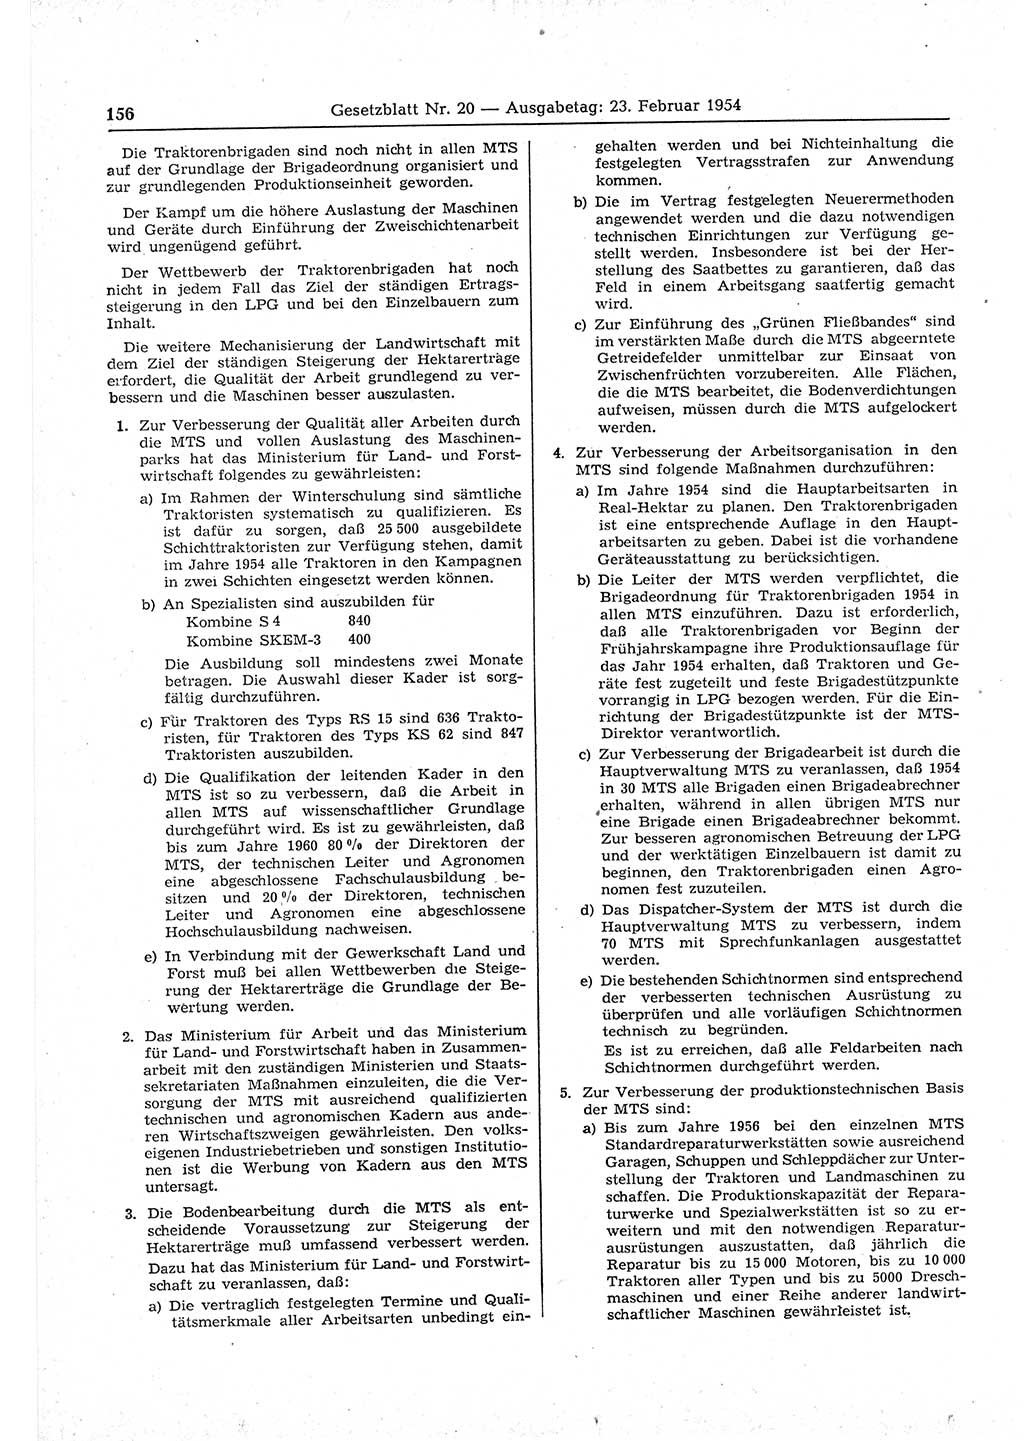 Gesetzblatt (GBl.) der Deutschen Demokratischen Republik (DDR) 1954, Seite 156 (GBl. DDR 1954, S. 156)